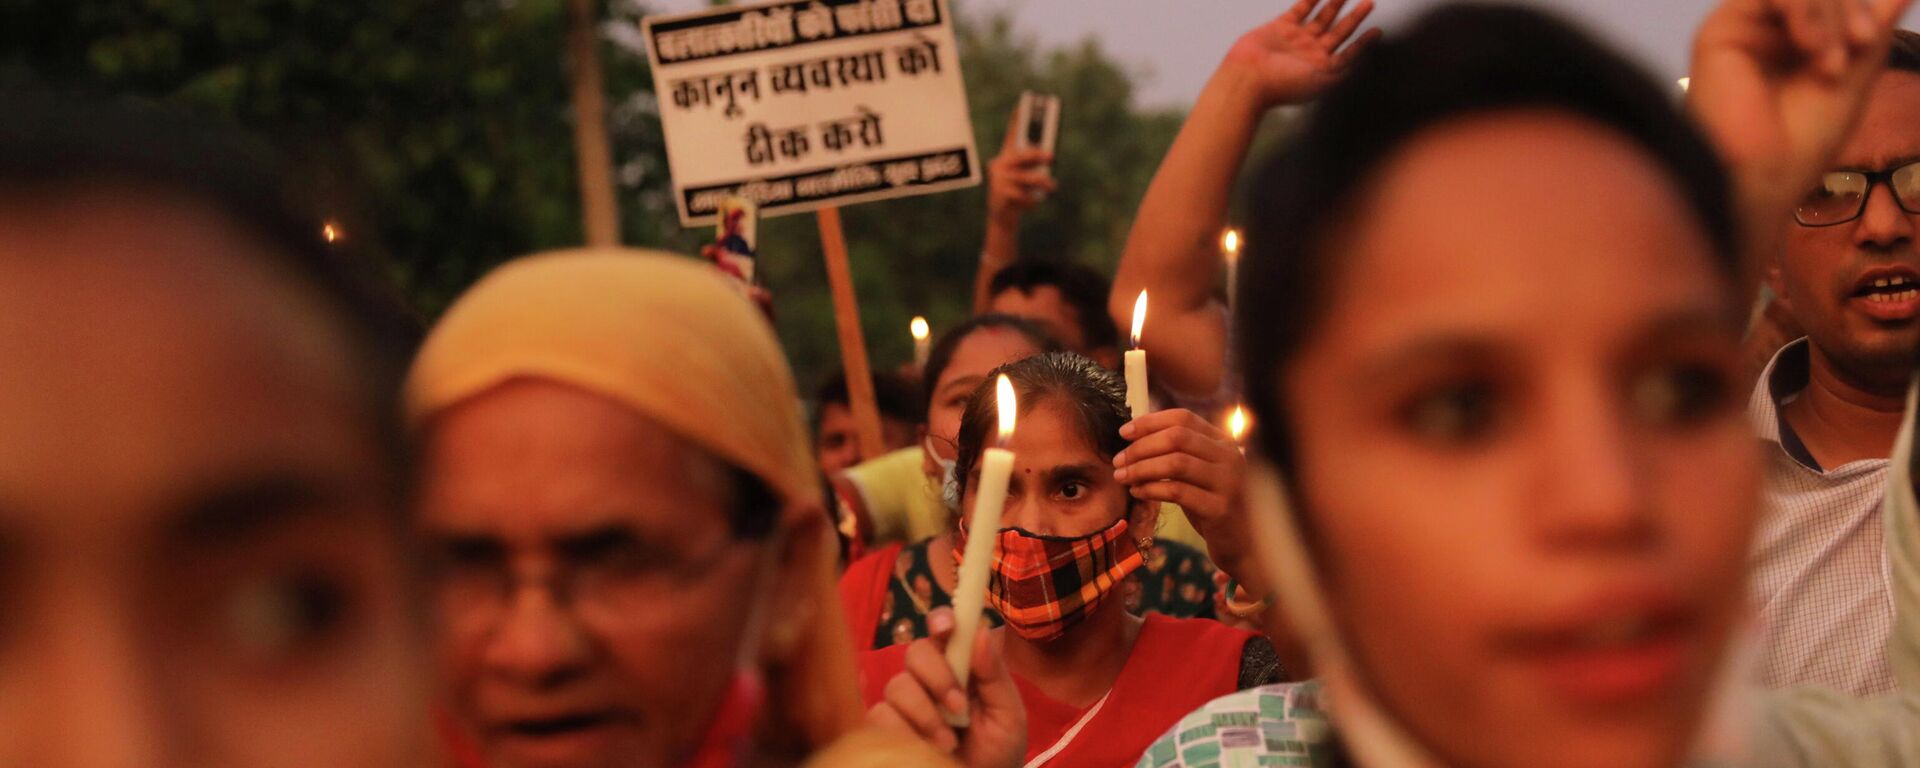 Hindistan başkenti Yeni Delhi'de tecavüz edilip öldürülen 9 yaşındaki kız çocuğu için anma törenine katılanlar (Ağustos 2021) - Sputnik Türkiye, 1920, 16.11.2021